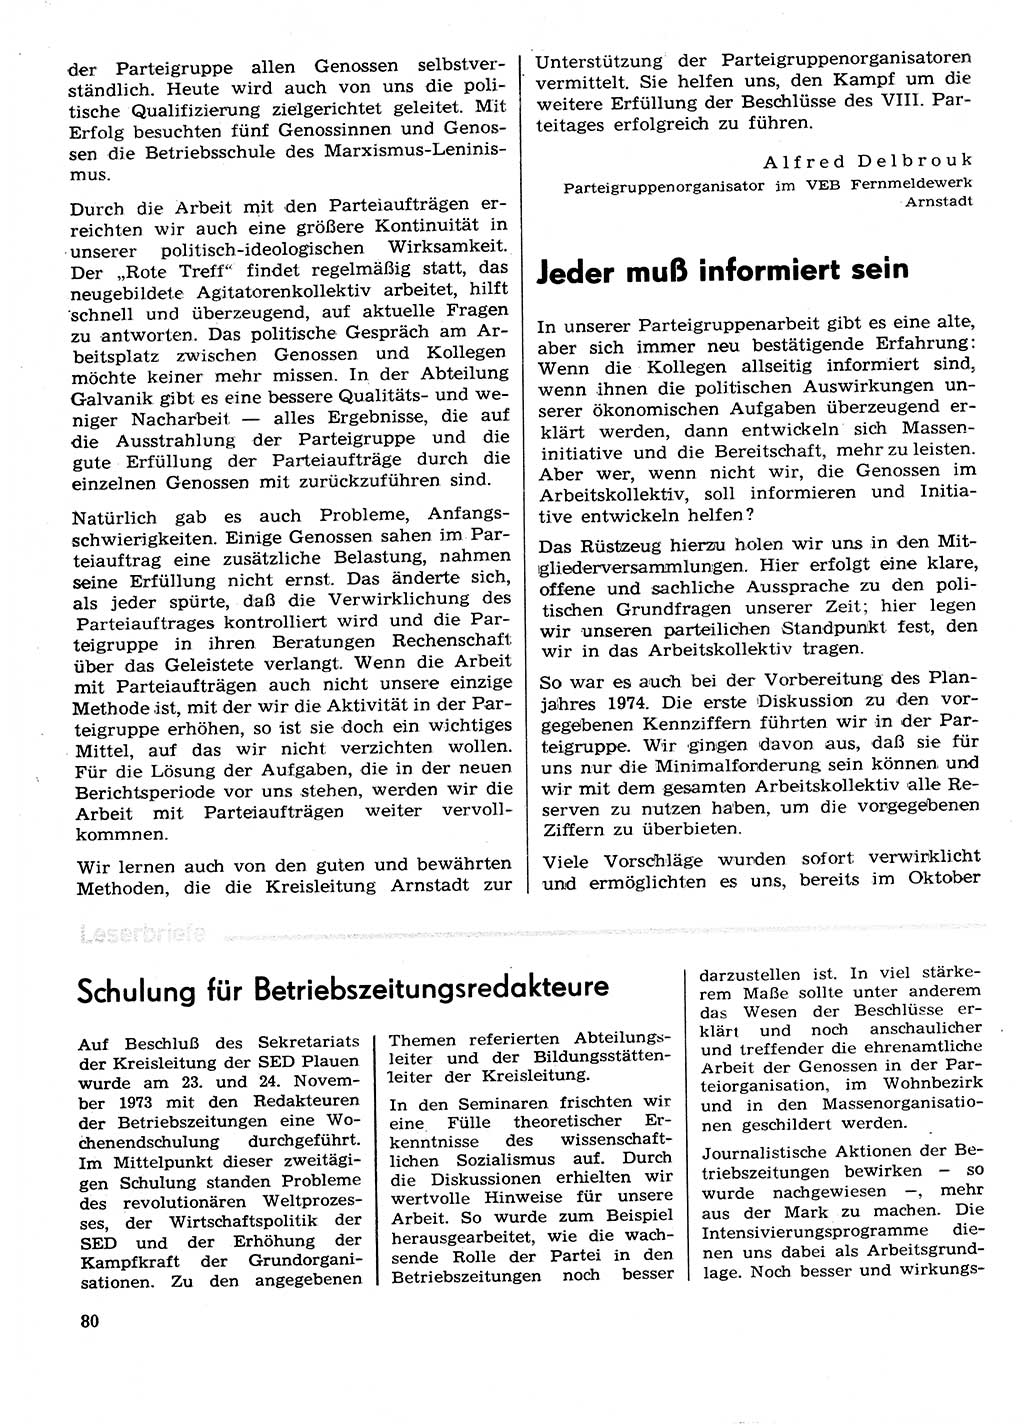 Neuer Weg (NW), Organ des Zentralkomitees (ZK) der SED (Sozialistische Einheitspartei Deutschlands) für Fragen des Parteilebens, 29. Jahrgang [Deutsche Demokratische Republik (DDR)] 1974, Seite 80 (NW ZK SED DDR 1974, S. 80)